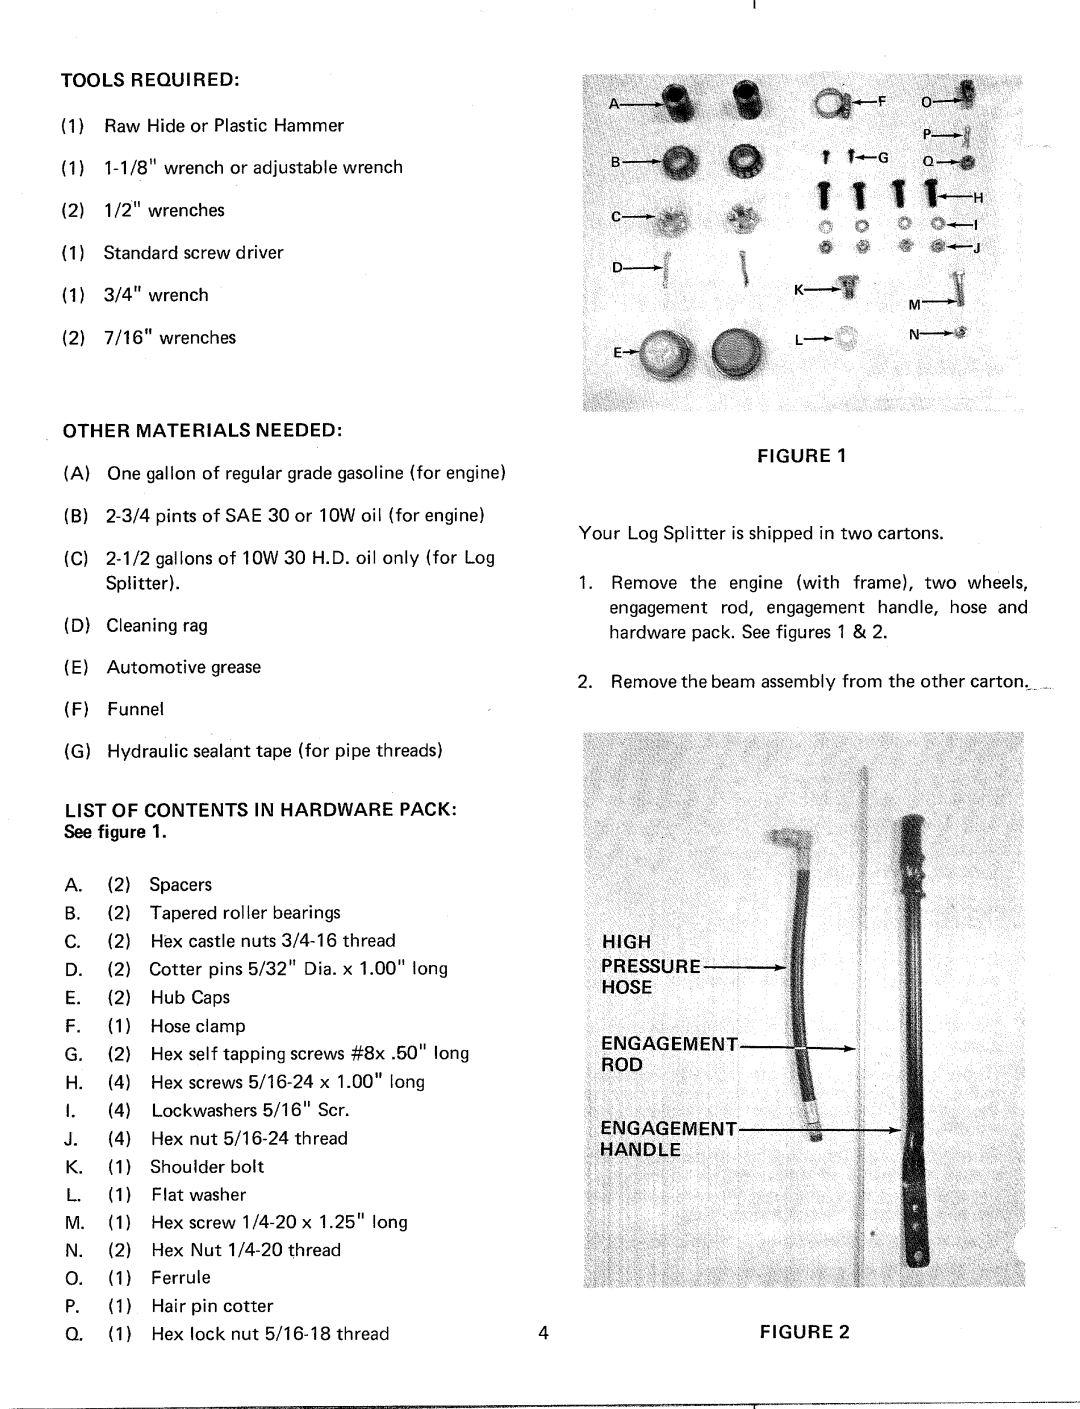 MTD 249-645A manual 